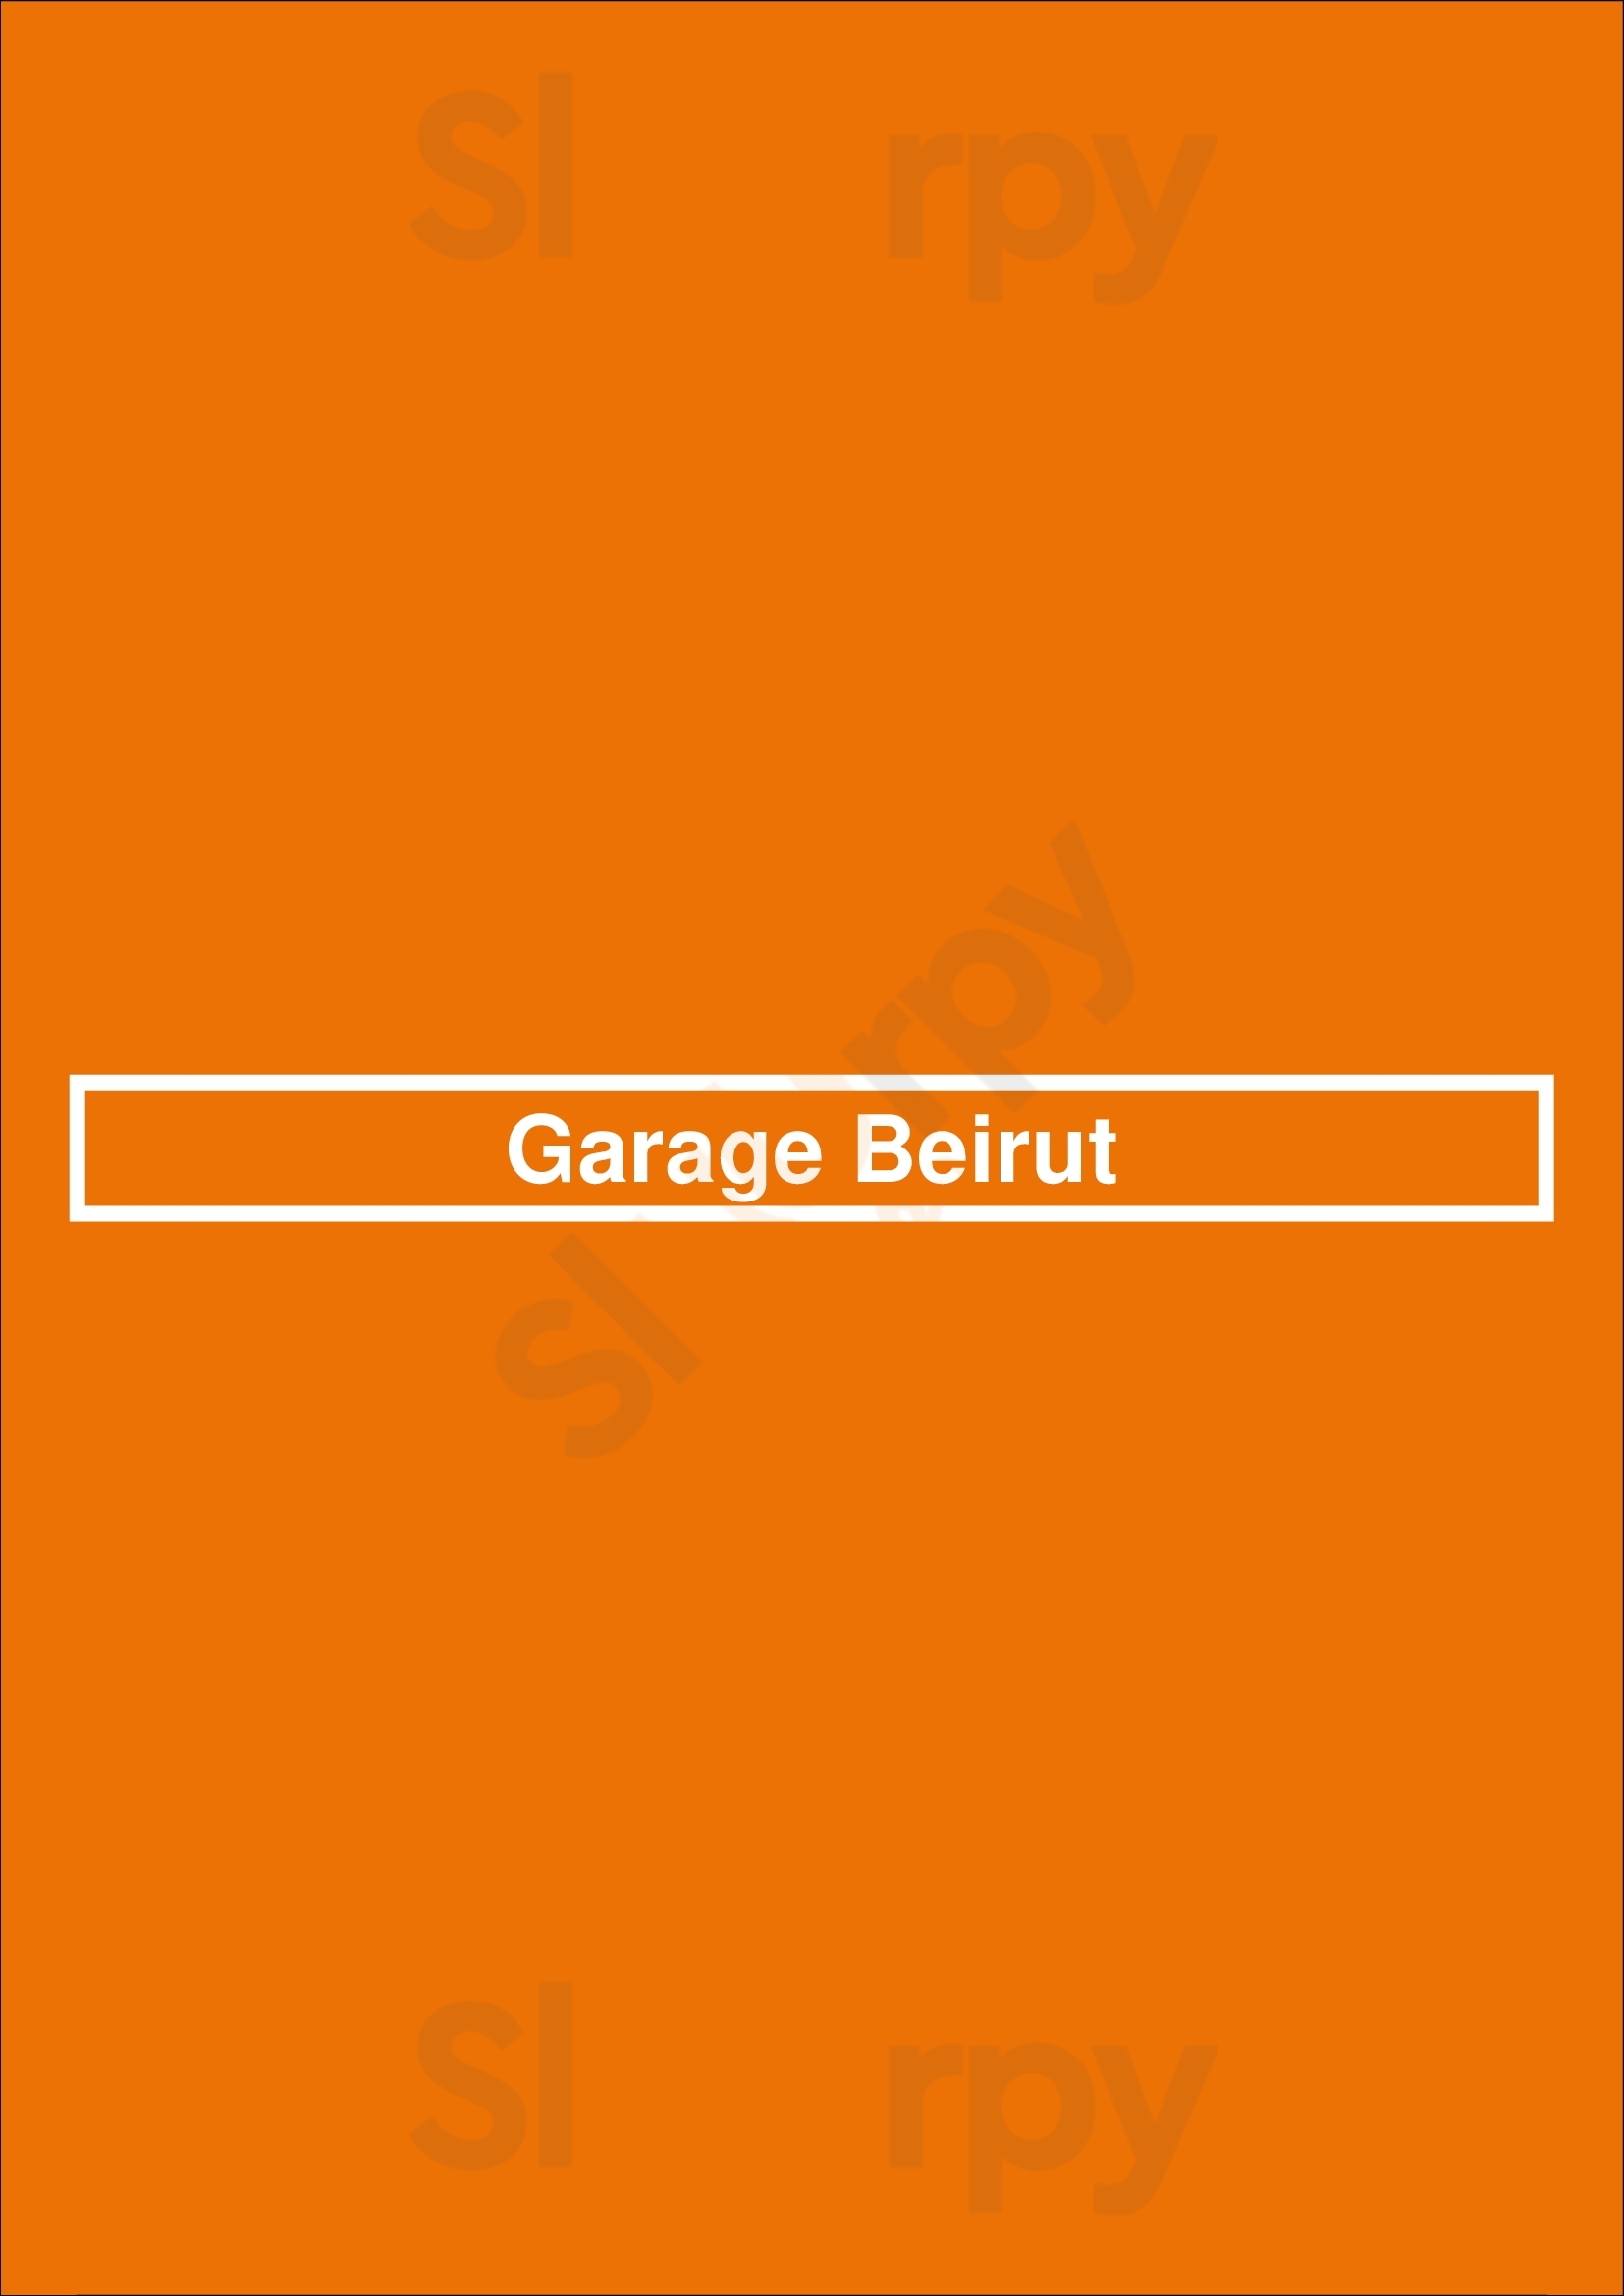 Garage Beirut Montreal Menu - 1